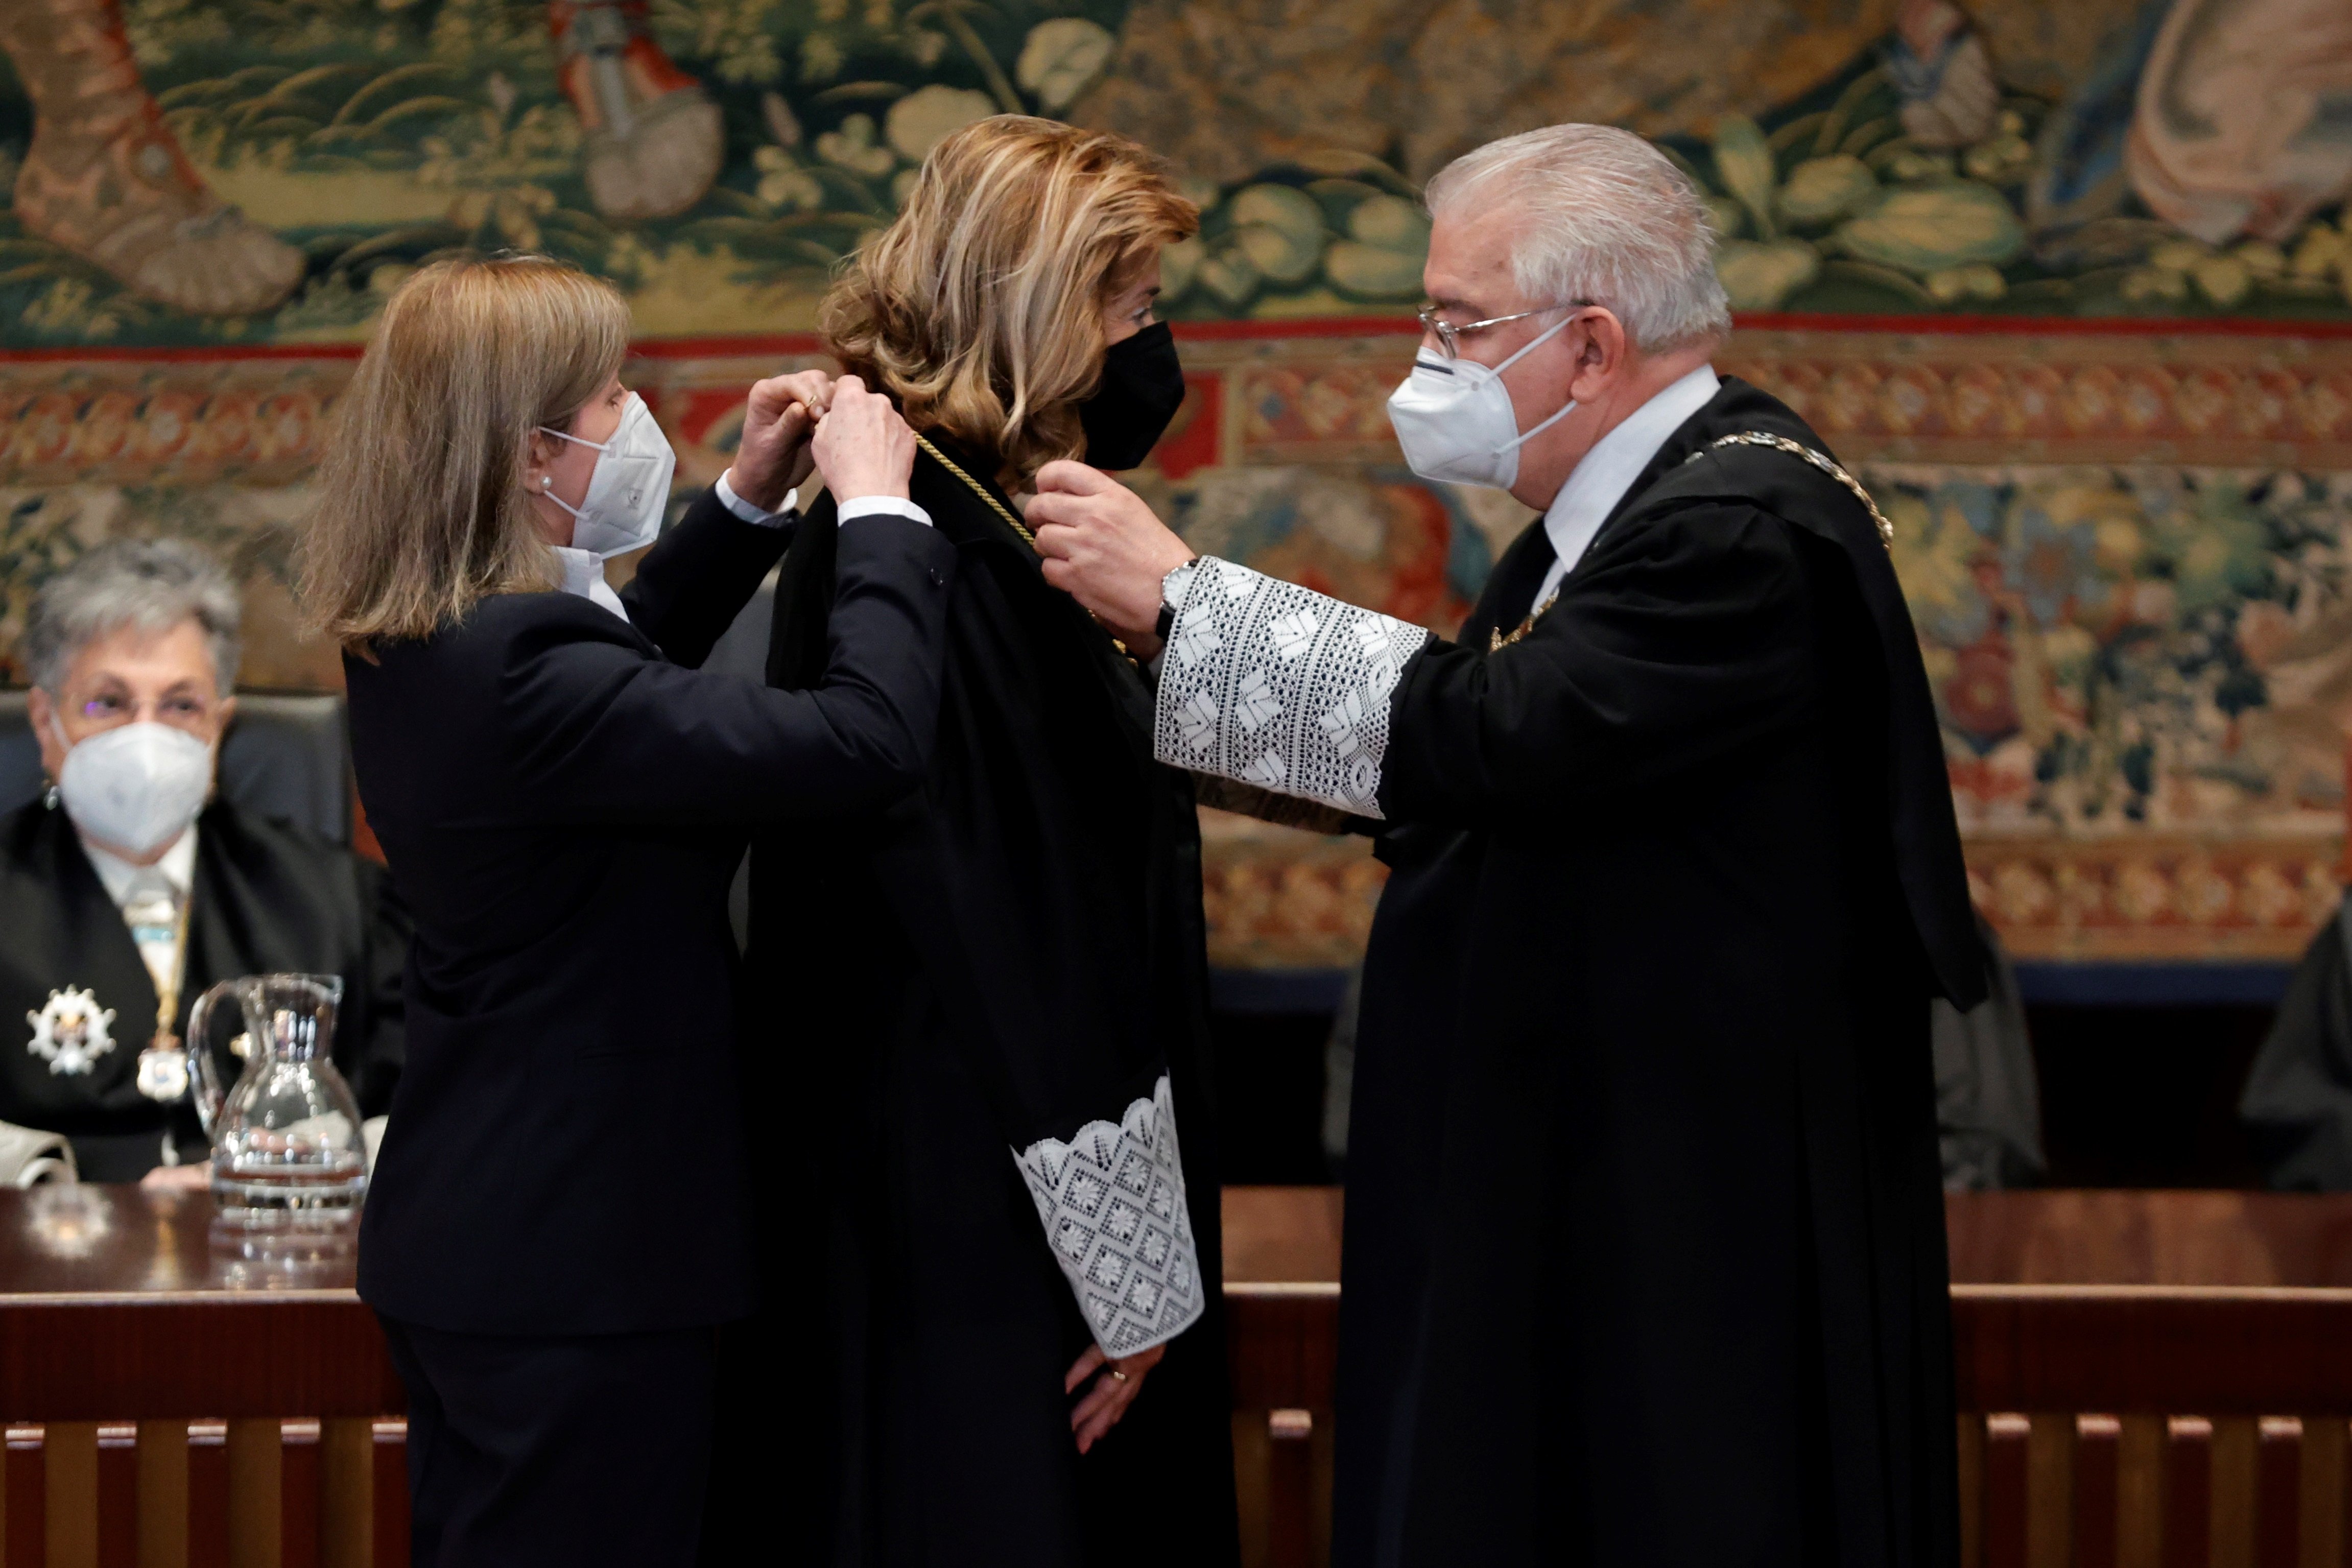 El TC no accepta les recusacions de Puigdemont perquè vol "paralitzar" el tribunal